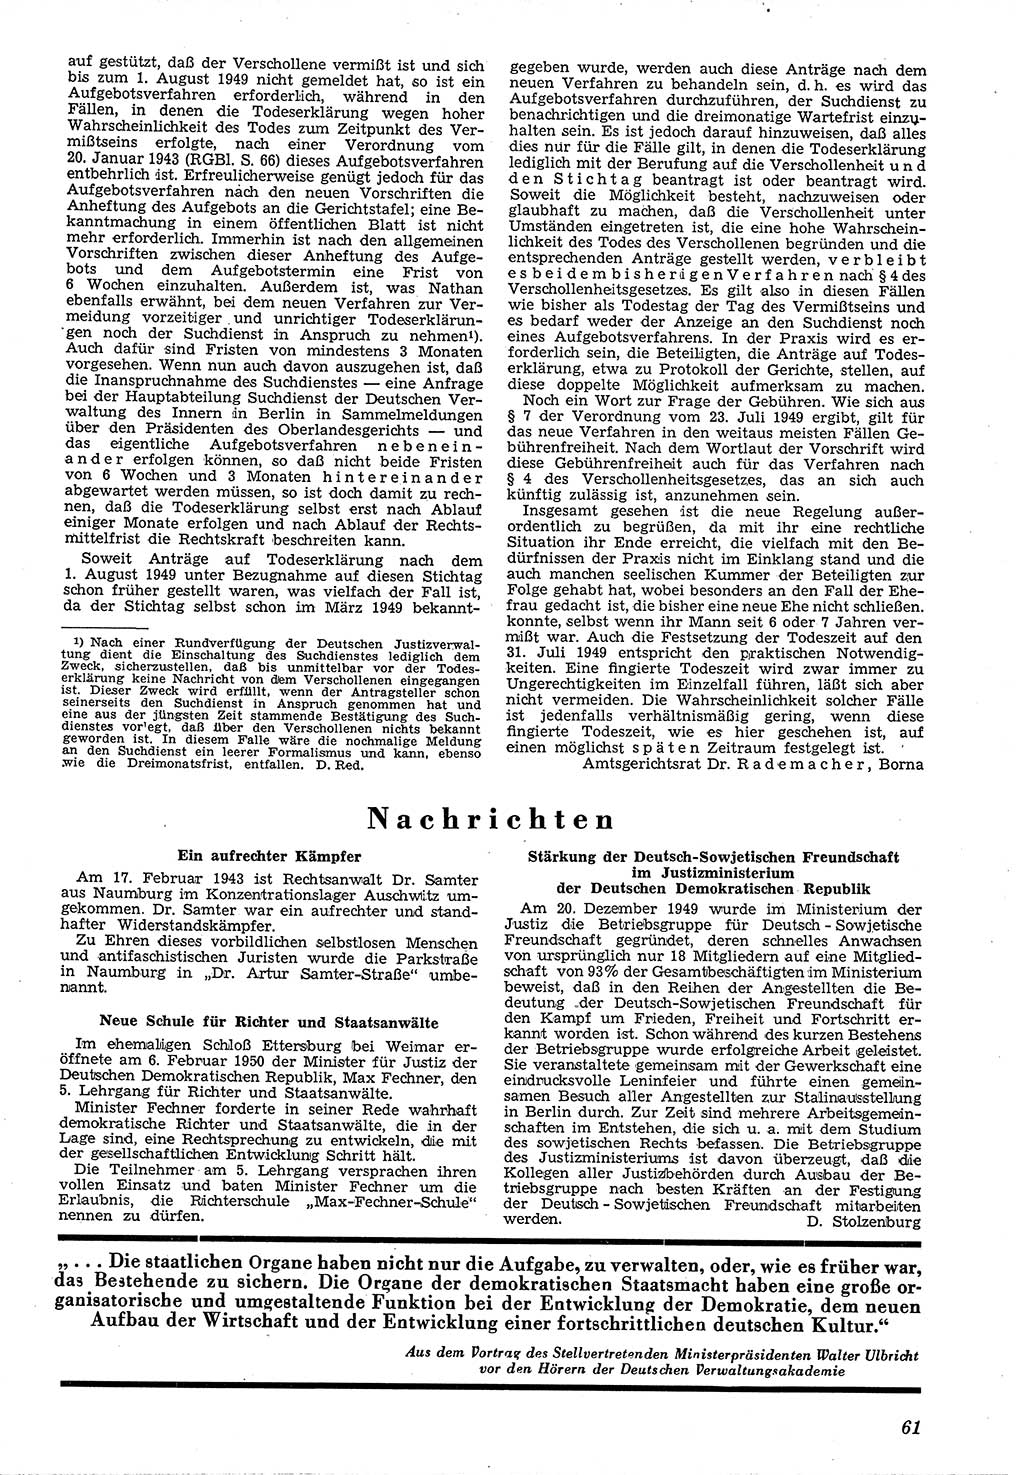 Neue Justiz (NJ), Zeitschrift für Recht und Rechtswissenschaft [Deutsche Demokratische Republik (DDR)], 4. Jahrgang 1950, Seite 61 (NJ DDR 1950, S. 61)